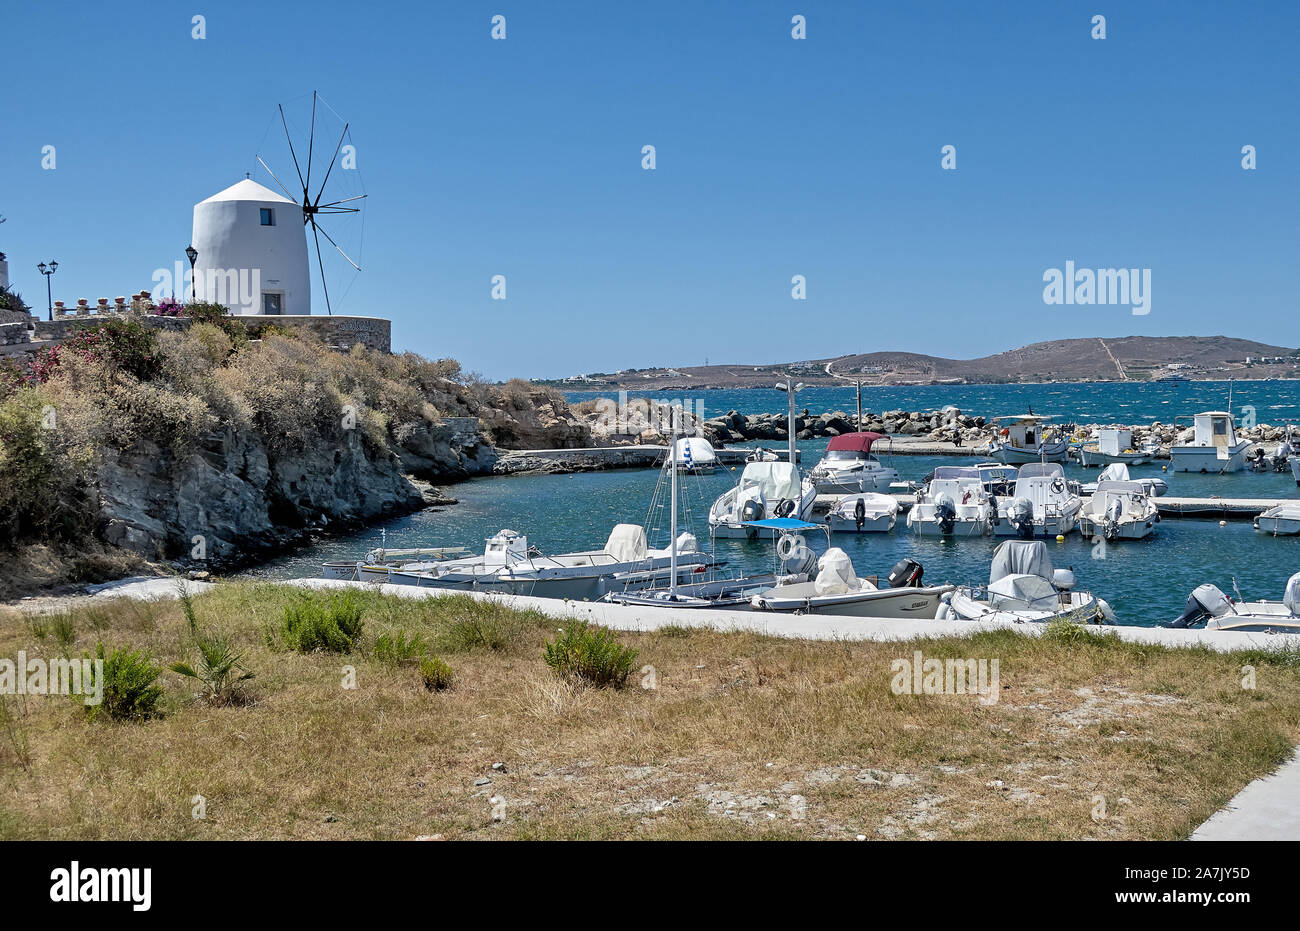 Paikia, isola di Paros, Grecia - 30 Giugno 2019: vista sulla Marina e il suo mulino a vento a Parikia, isola di Paros, Grecia Foto Stock